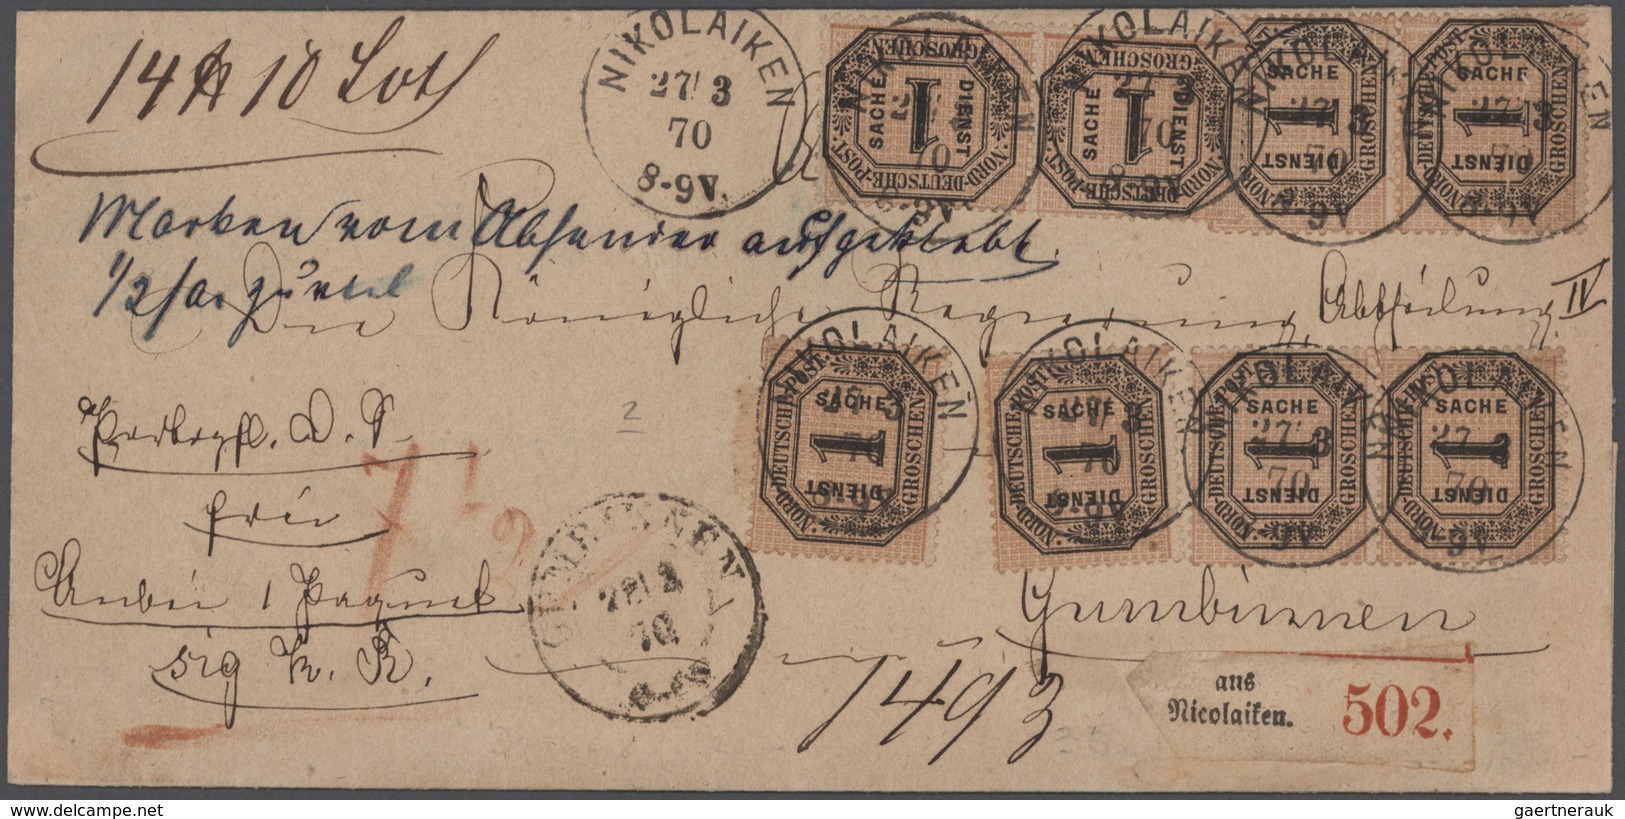 Altdeutschland: 1851-1900, Partie mit rund 90 Briefen und Ganzsachen ohne Bayern und Württemberg, da